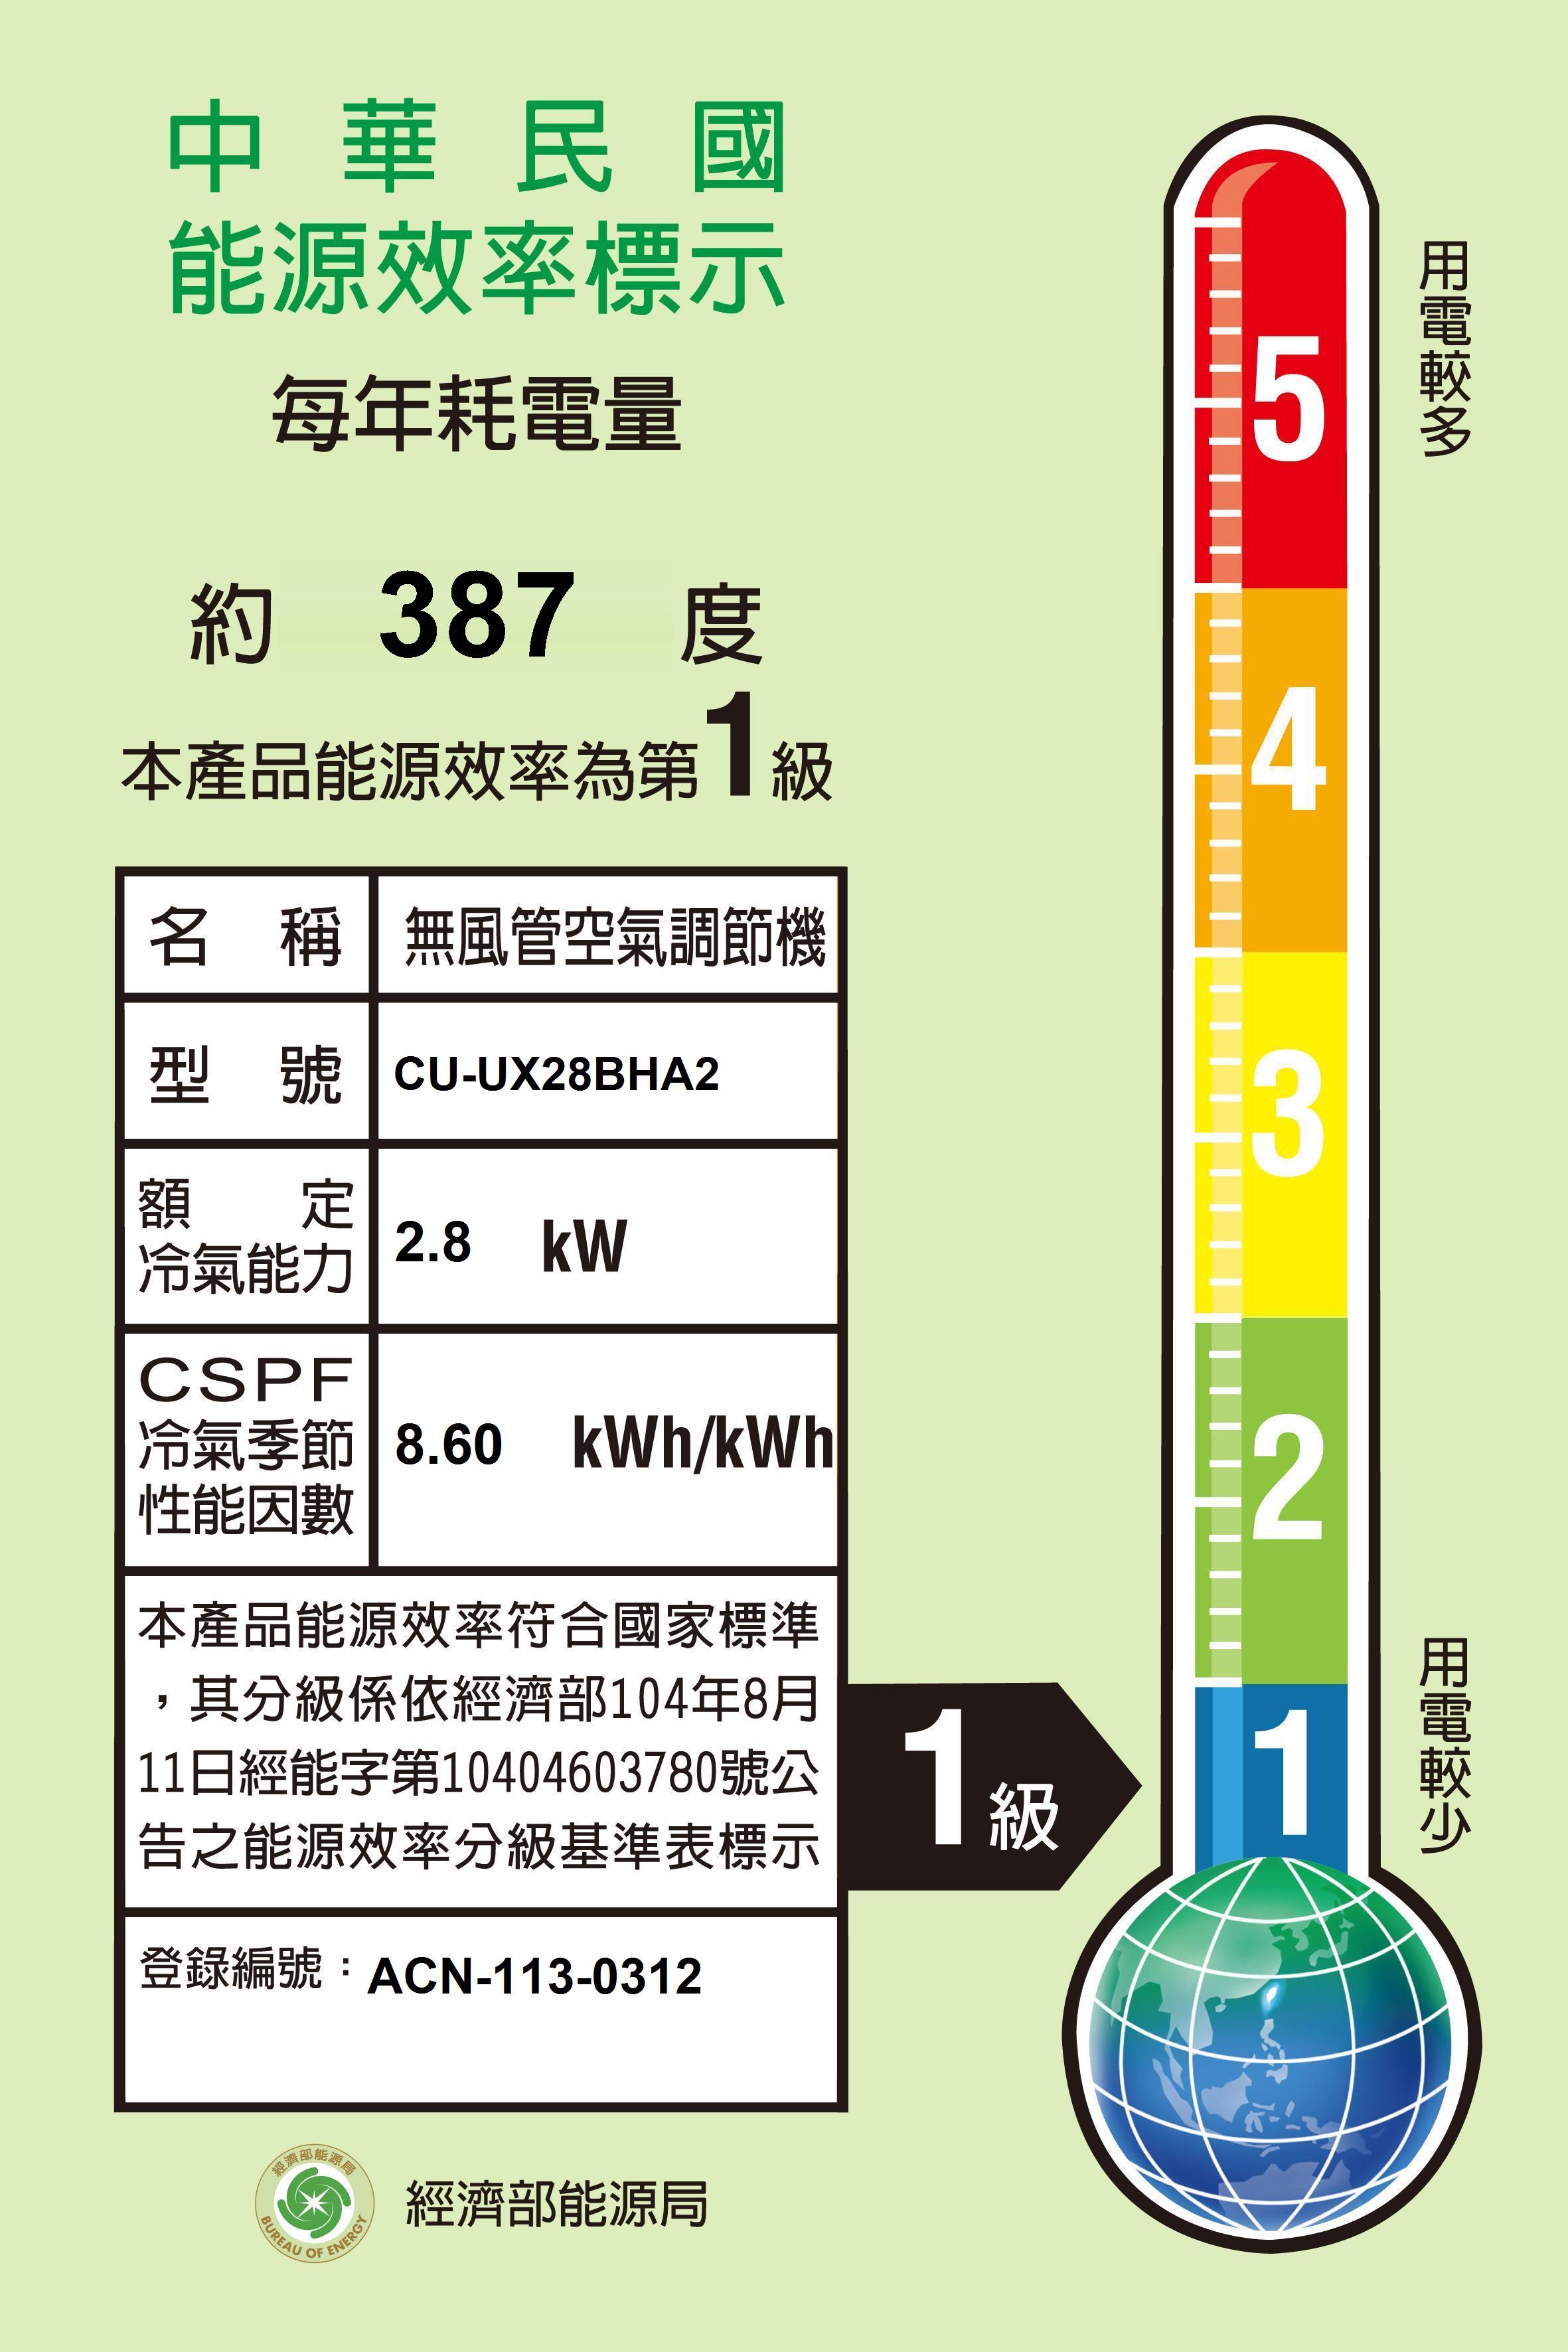 中華民國能源效率標示每年耗電量5約387 度本產品能源效率為第級4名稱名 稱 無風管空氣調節機型號 CU-UX28BHA23額定冷氣能力2.8 CSPF冷氣季節 8.60 kWh/kWh性能因數本產品能源效率符合國家標準,其分級係依經濟部104年8月11日經能字第10404603780號公之能源效率分級基準表標示1級2登錄編號:ACN-113-0312ENERGY 經濟部能源局BUREAU